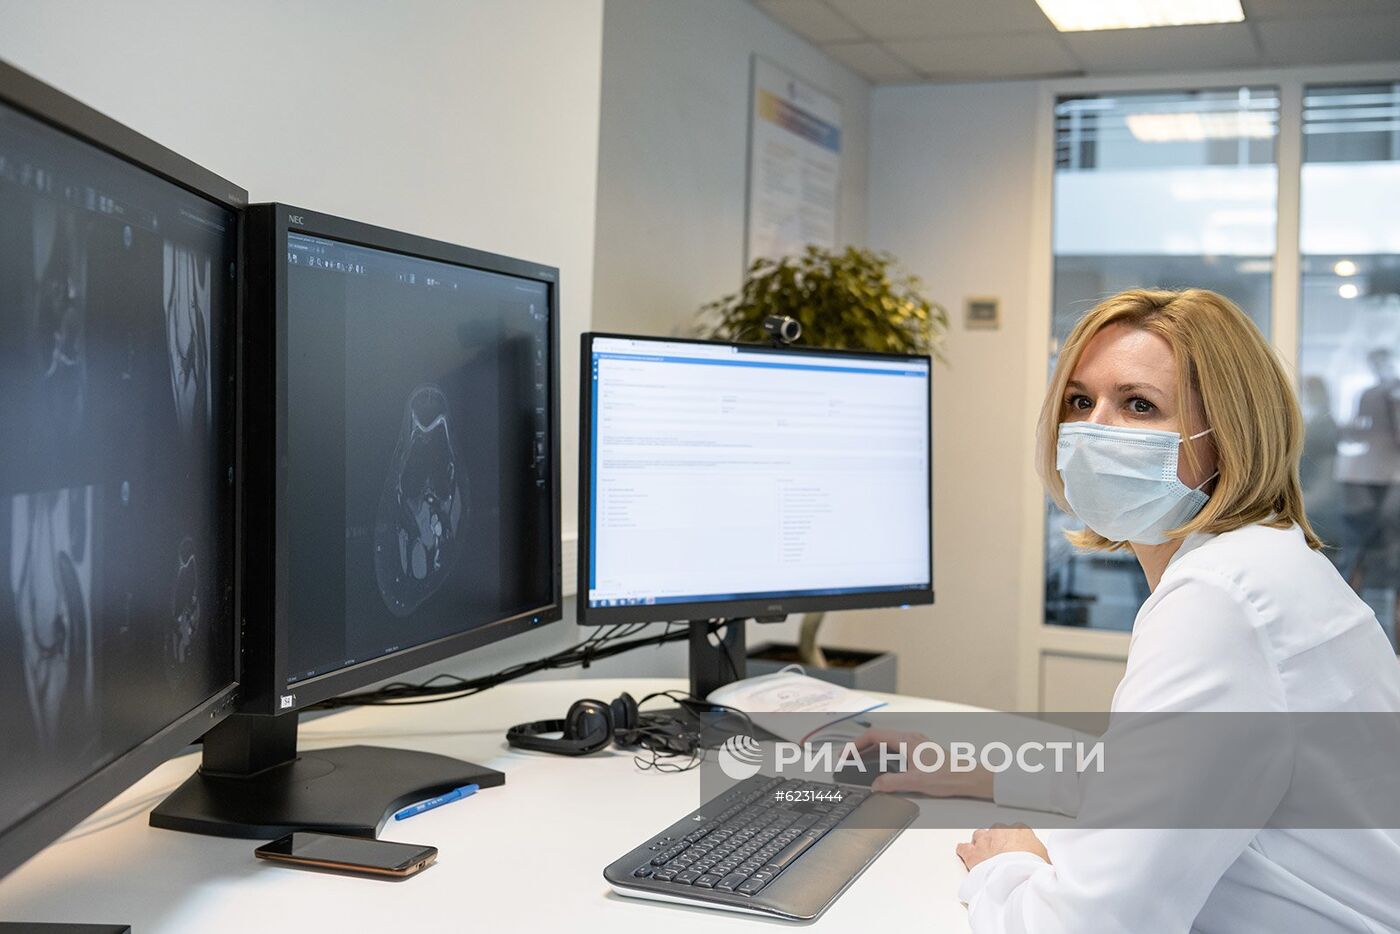 Московский референс-центр лучевой диагностики